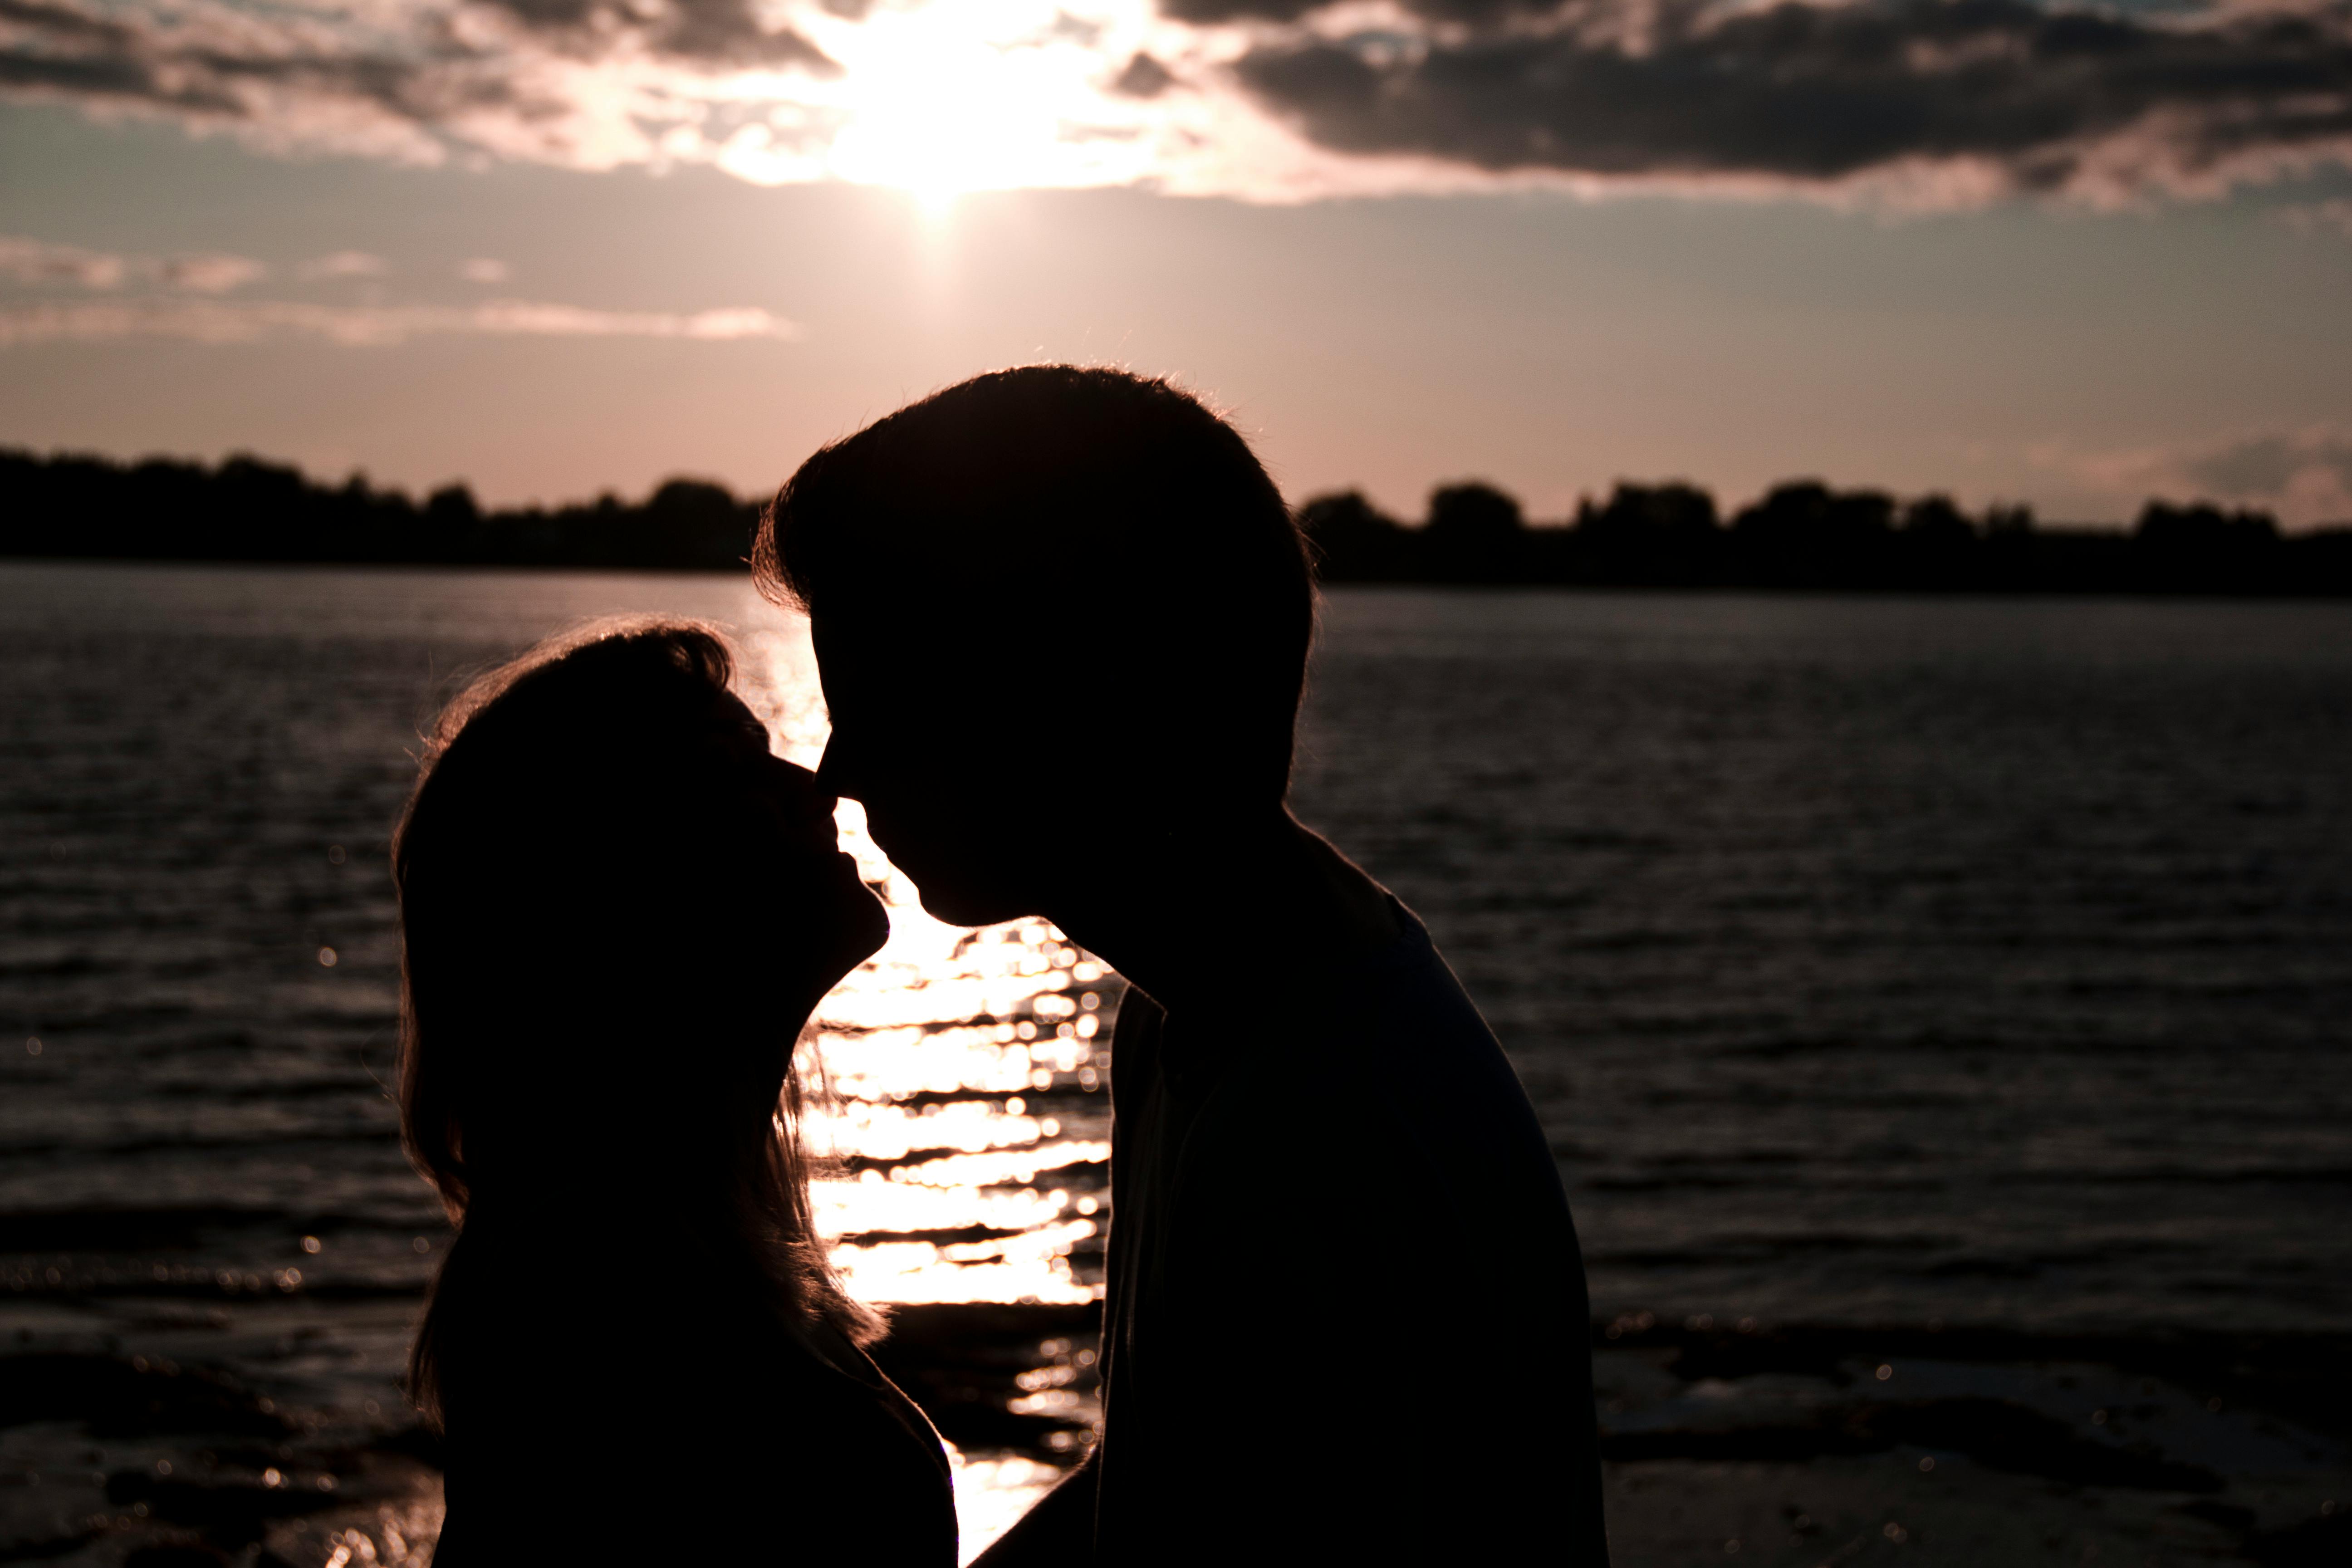 Ein Silhouettenfoto von einem Mann und einer Frau, die sich küssen | Quelle: Pexels